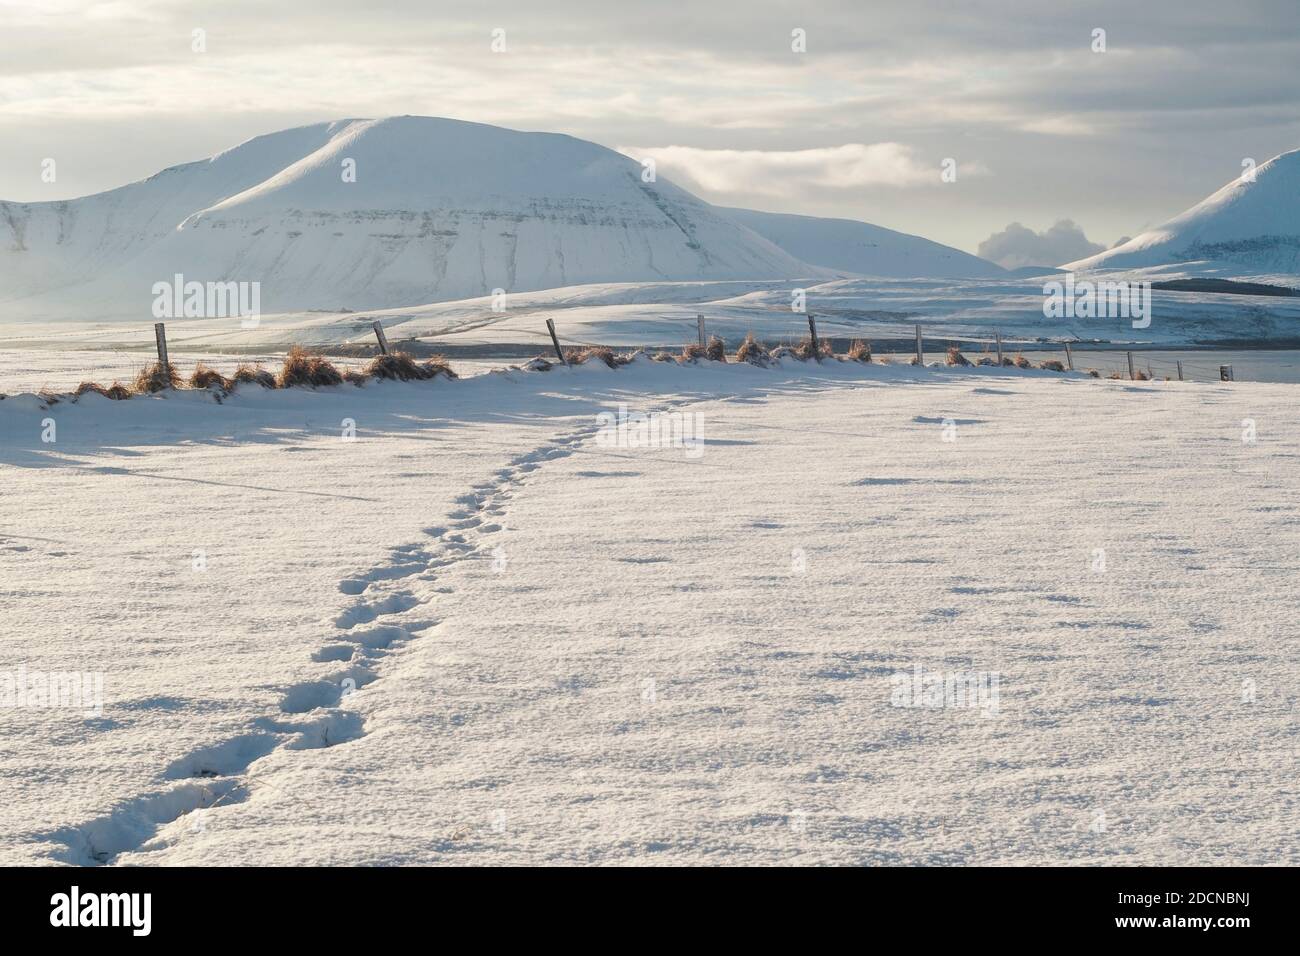 Pistes sur une scène de neige fraîche sur les îles Orcades avec colline couvert de neige le jour d'hiver Banque D'Images